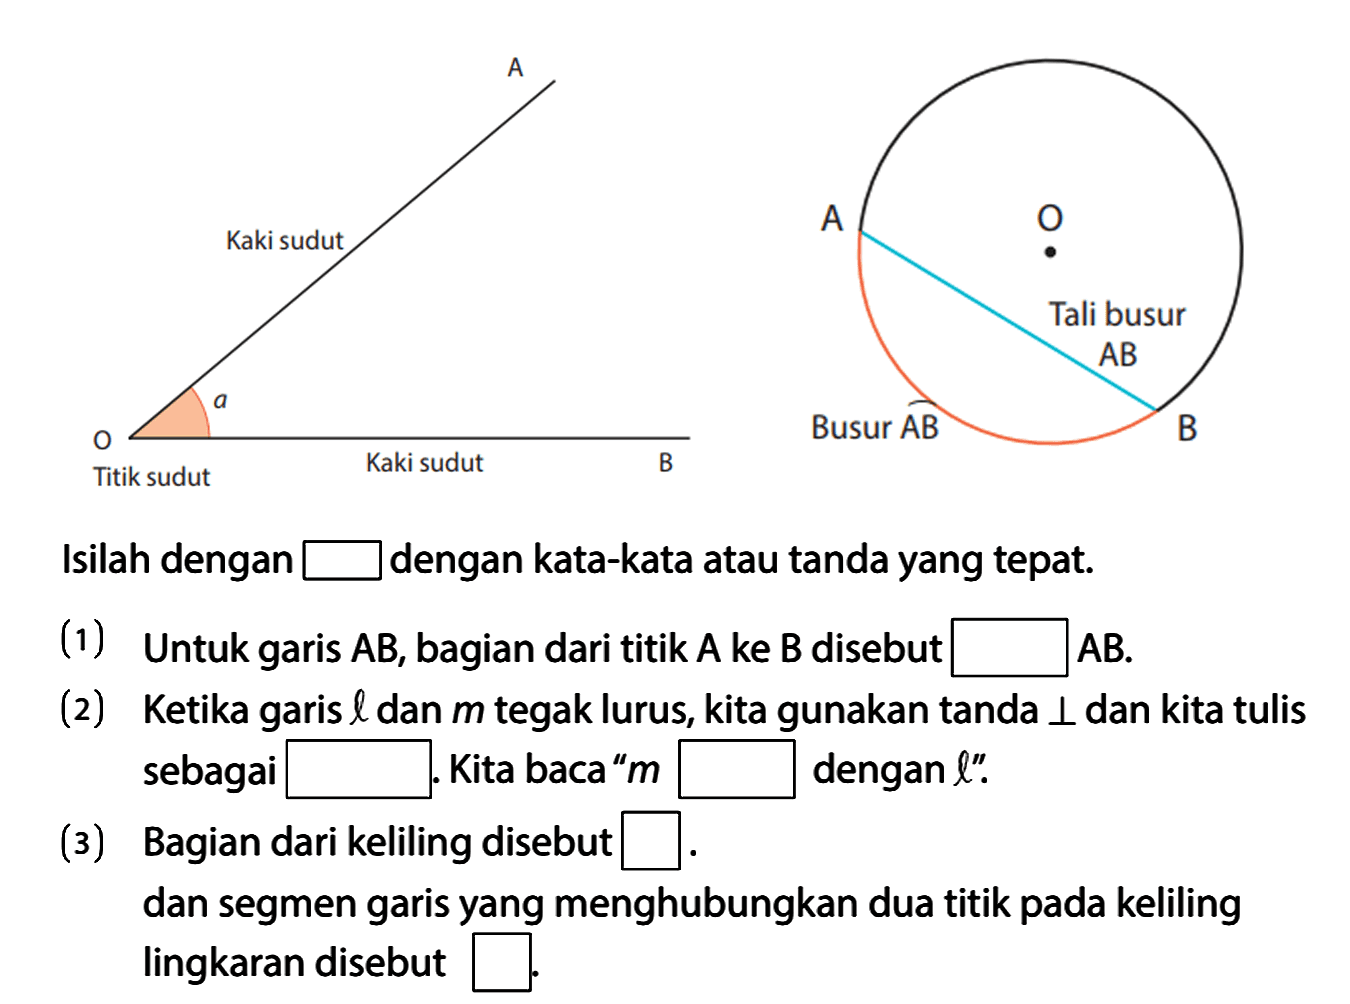 A O B Kaki sudut Titik sudut Kaki sudut a A O B Tali busur AB Busur AB 
Isilah dengan dengan kata-kata atau tanda yang tepat.
(1) Untuk garis AB, bagian dari titik A ke B disebut ... AB.
(2) Ketika garis l dan m tegak lurus, kita gunakan tanda tegak lurus dan kita tulis sebagai .... Kita baca " m ... dengan l".
(3) Bagian dari keliling disebut ... dan segmen garis yang menghubungkan dua titik pada keliling lingkaran disebut ...